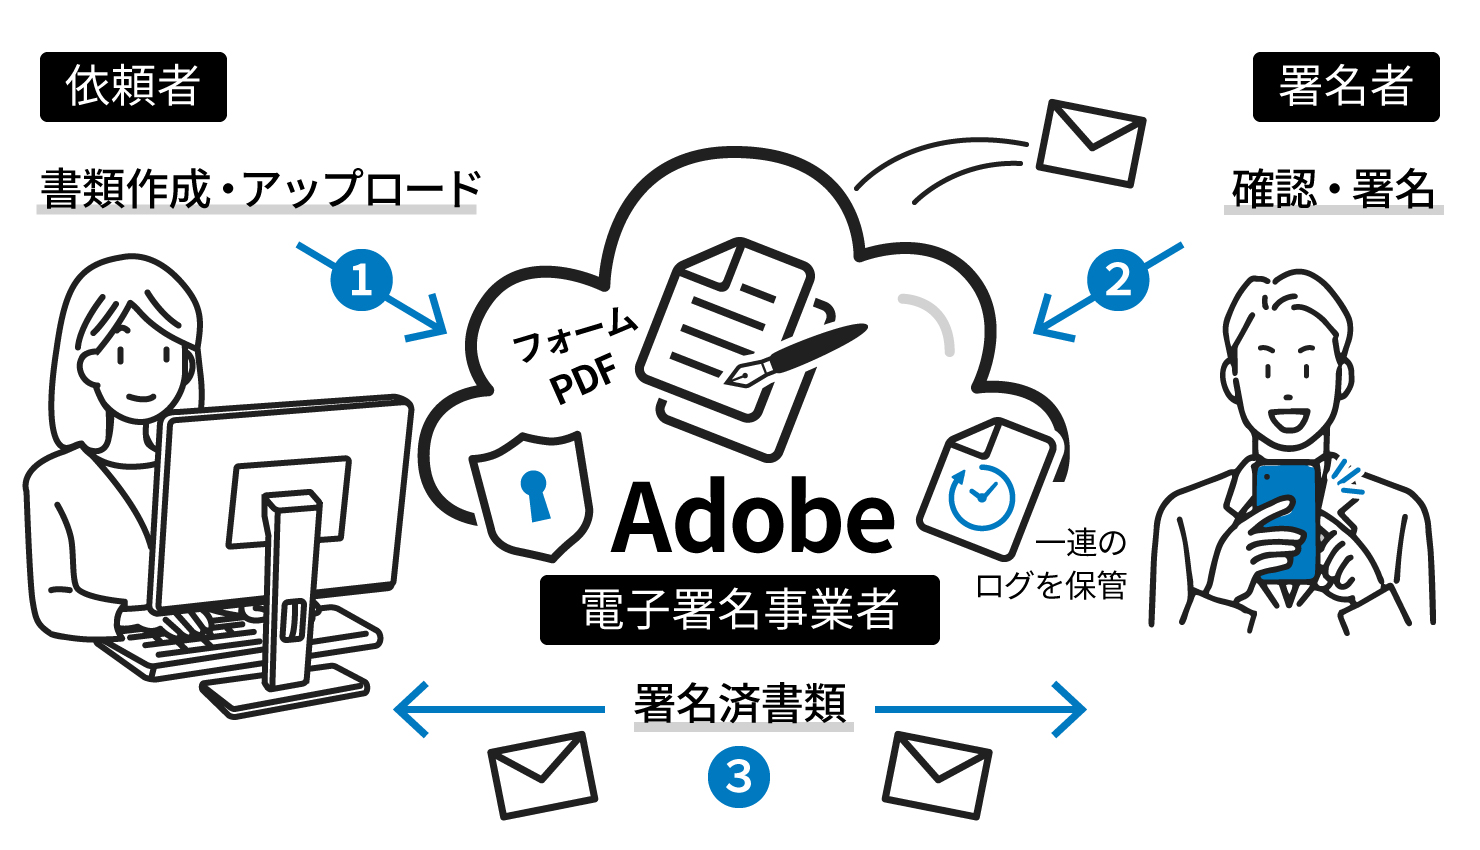 Adobe Acrobat Signの一連の流れイメージ